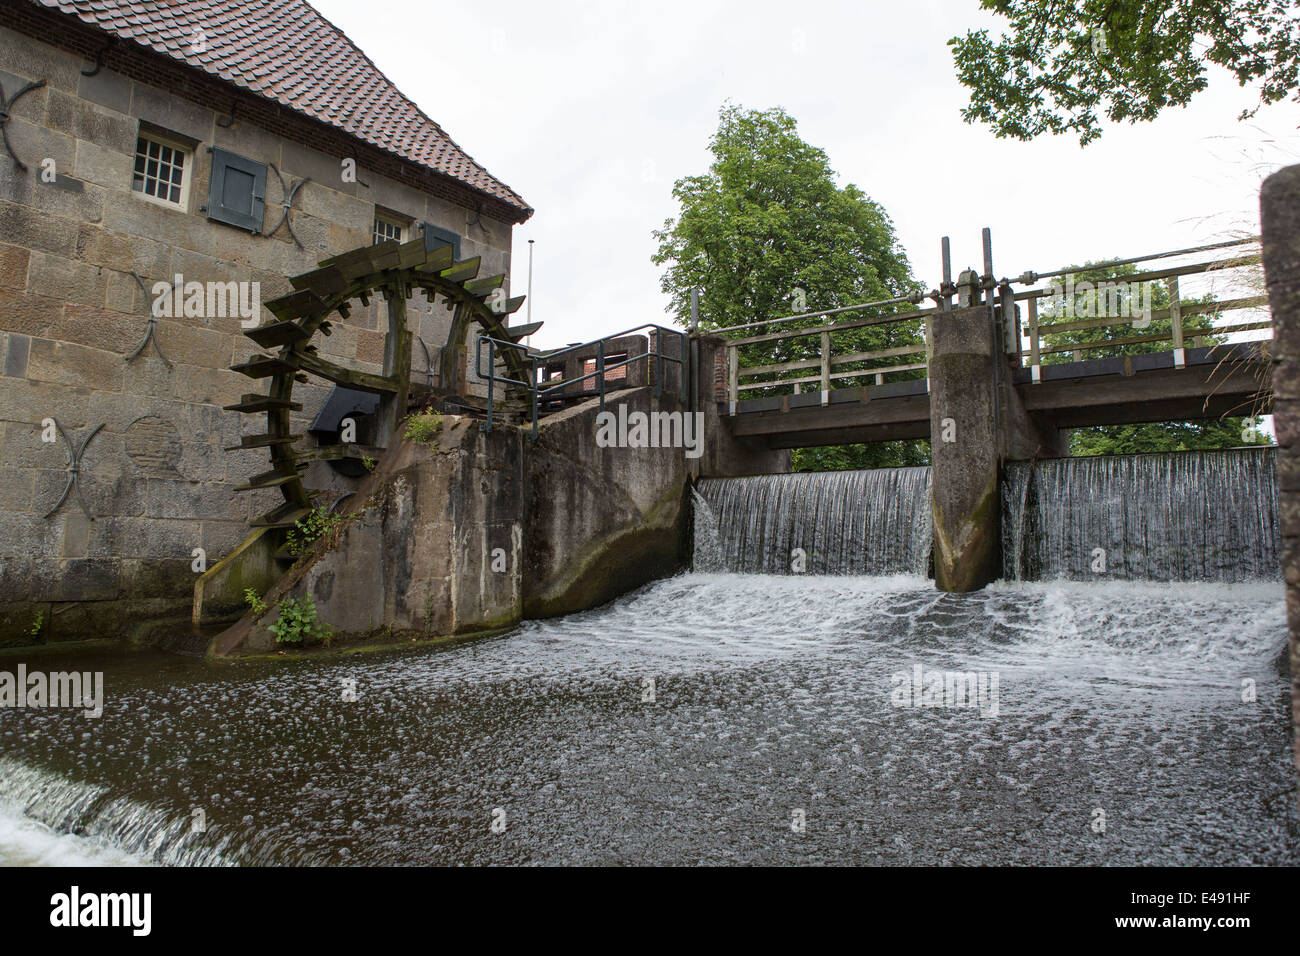 Le moulin à eau "allumse Watermolen' dans Saint-dizier dans les Pays-Bas Banque D'Images